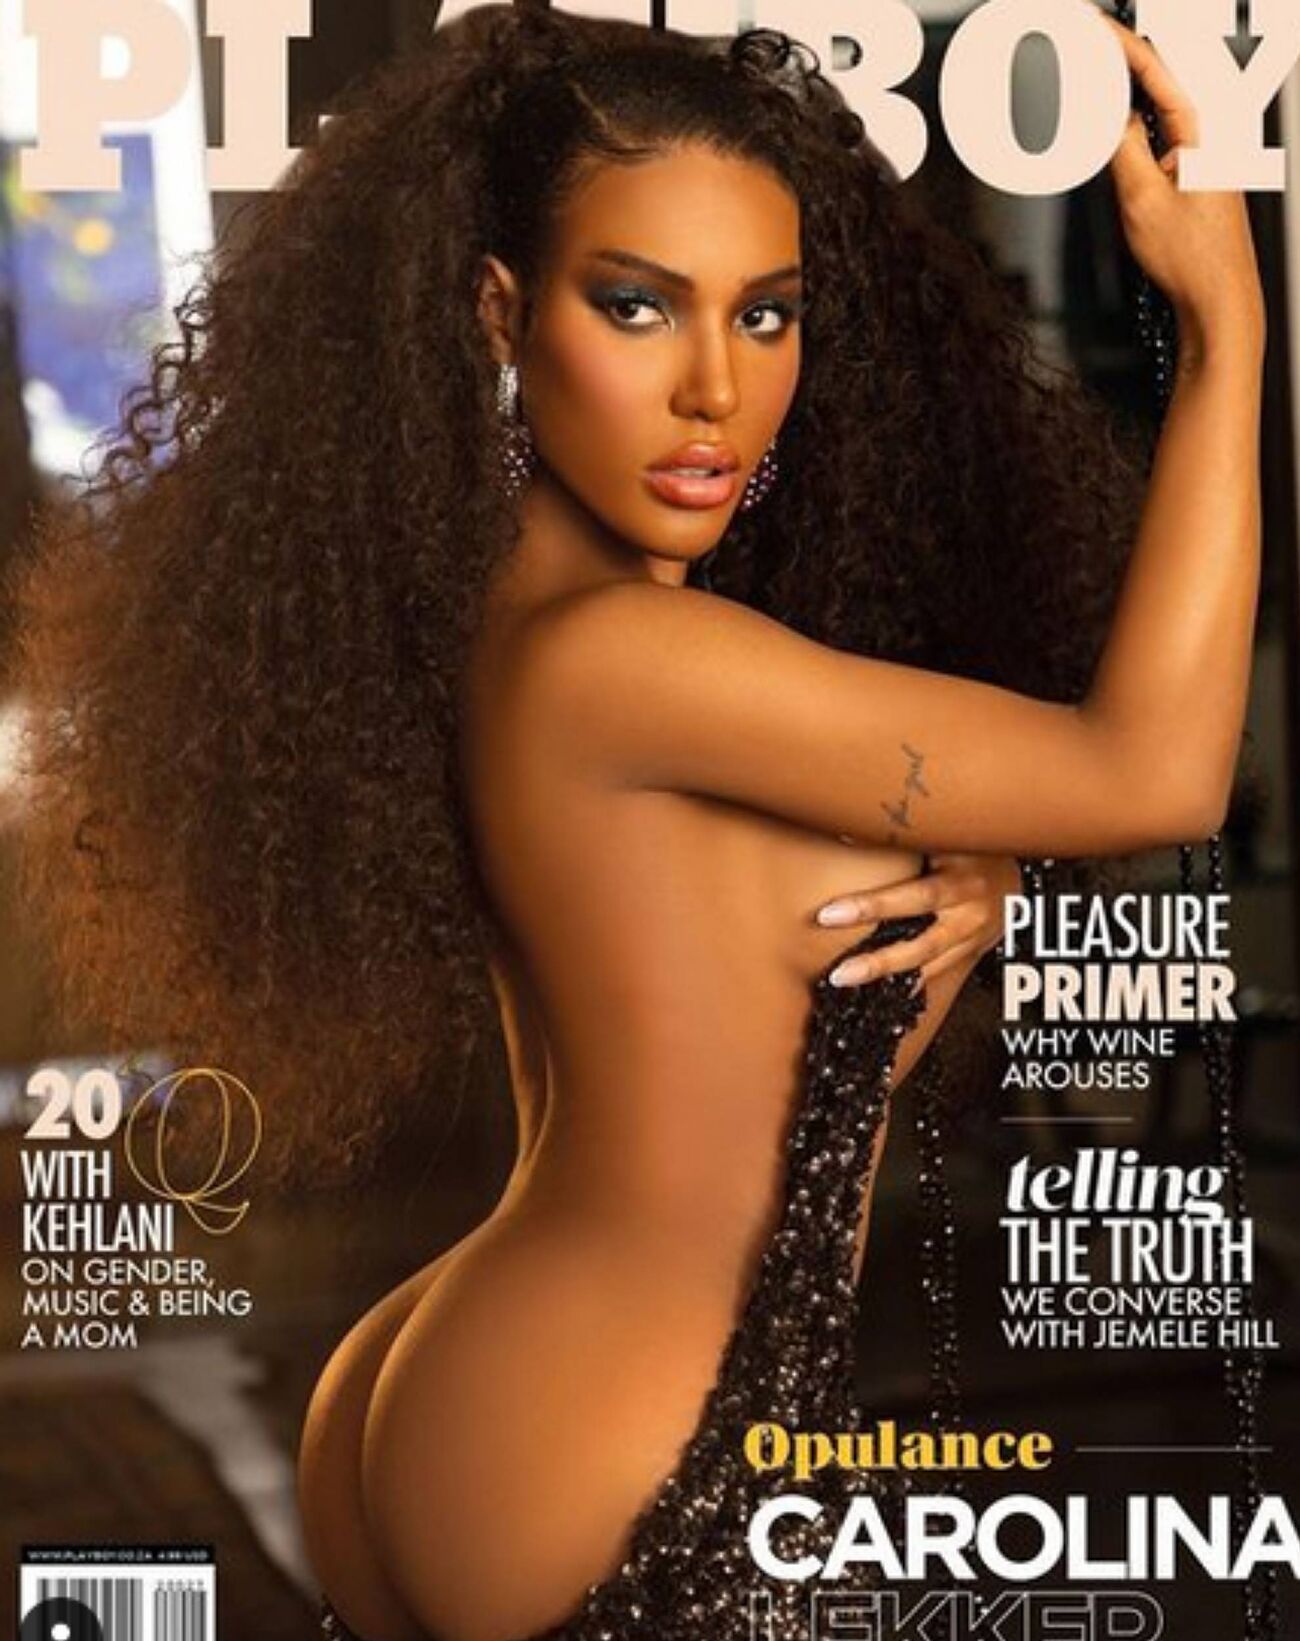 Carolina Lekker en la portada de la revista Playboy en su versión africana.